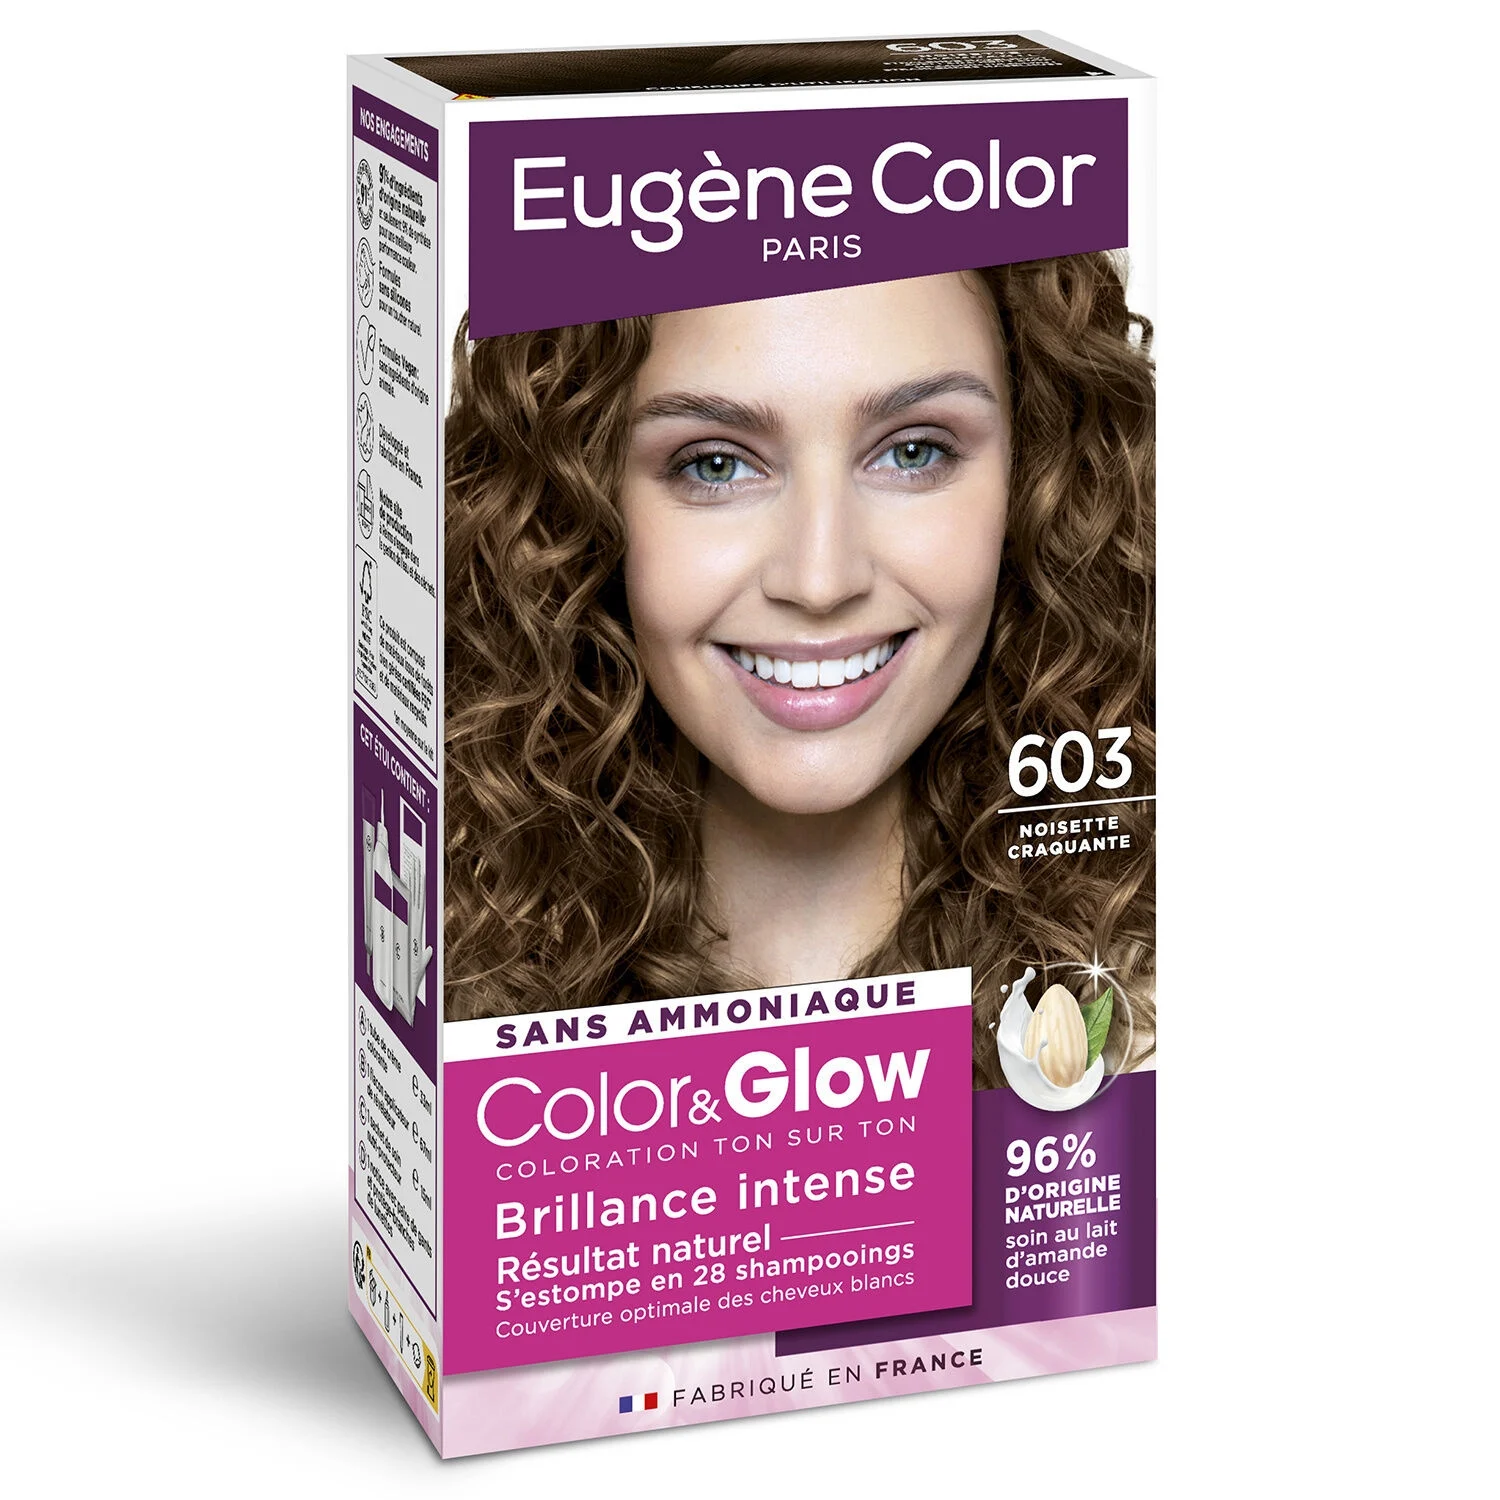 Coloration Capillaire 603 Noisette Craquante Color&glow - Eugene Color